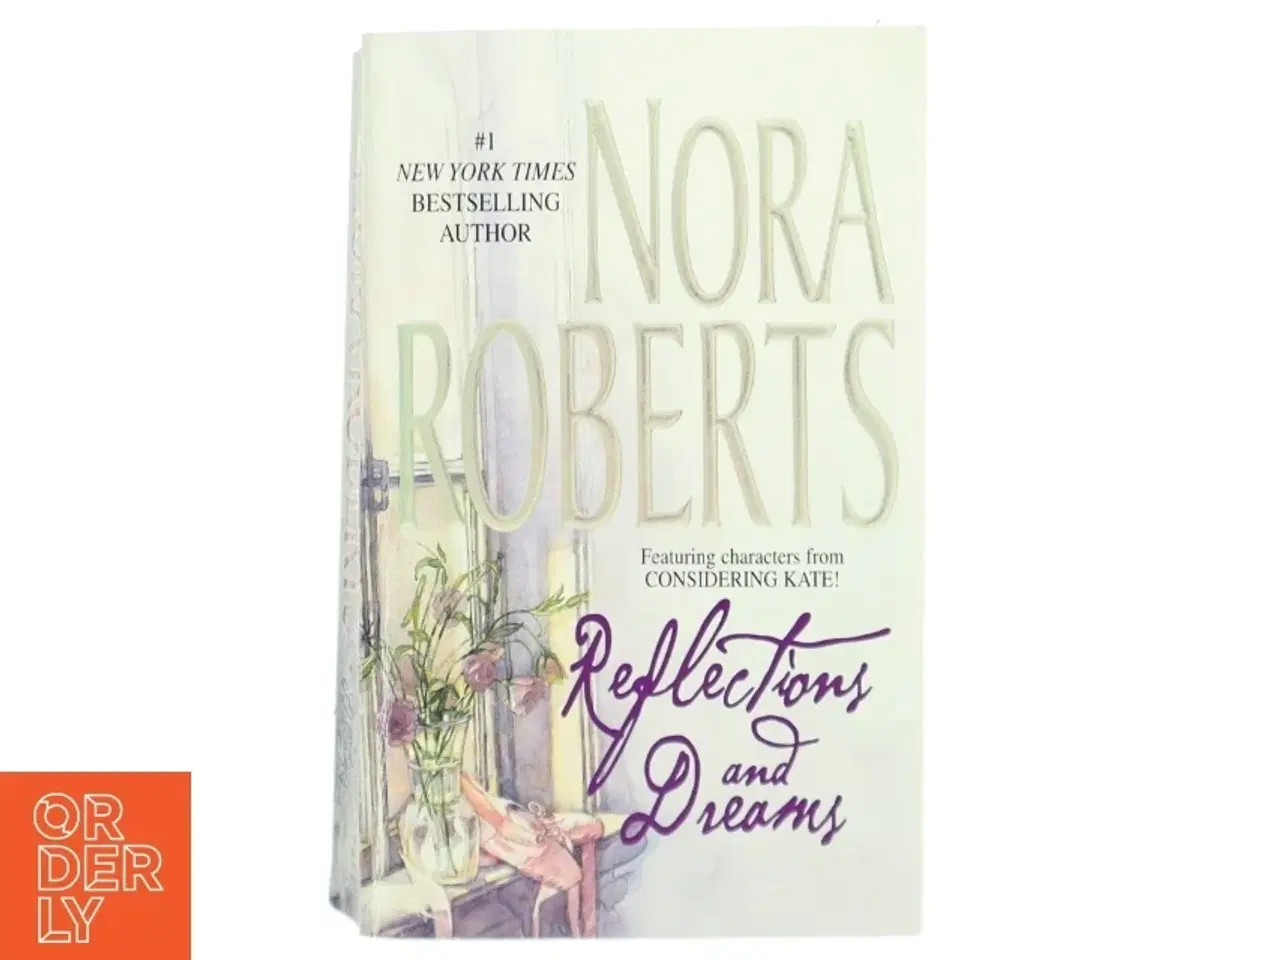 Billede 1 - 'Reflections and Dreams' af Nora Roberts (bog) fra Silhouette Books